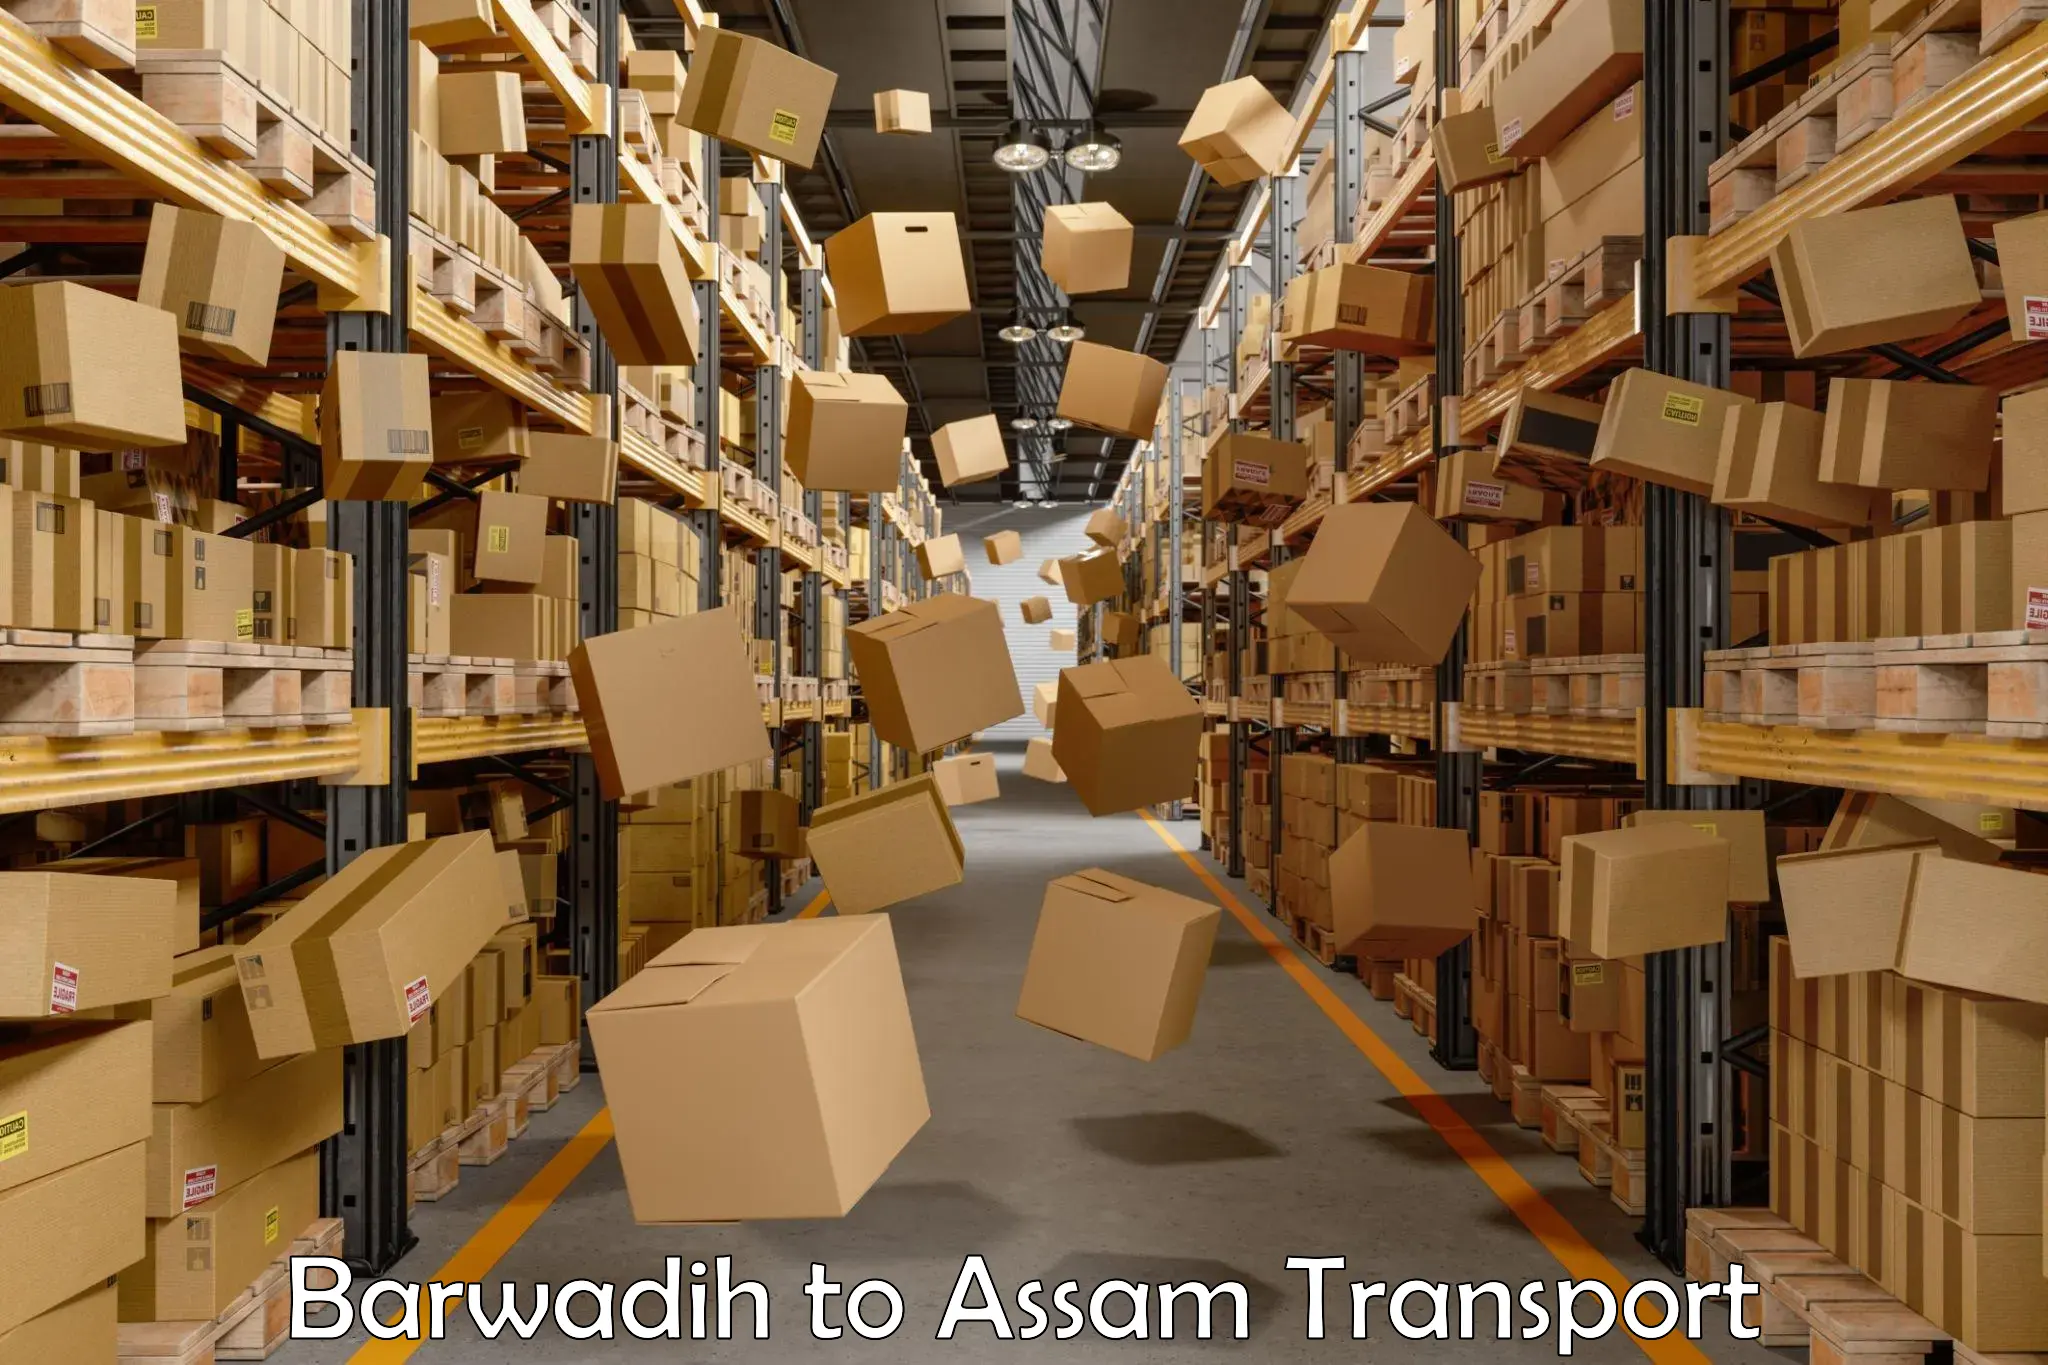 Transport in sharing Barwadih to Bamunimaidan